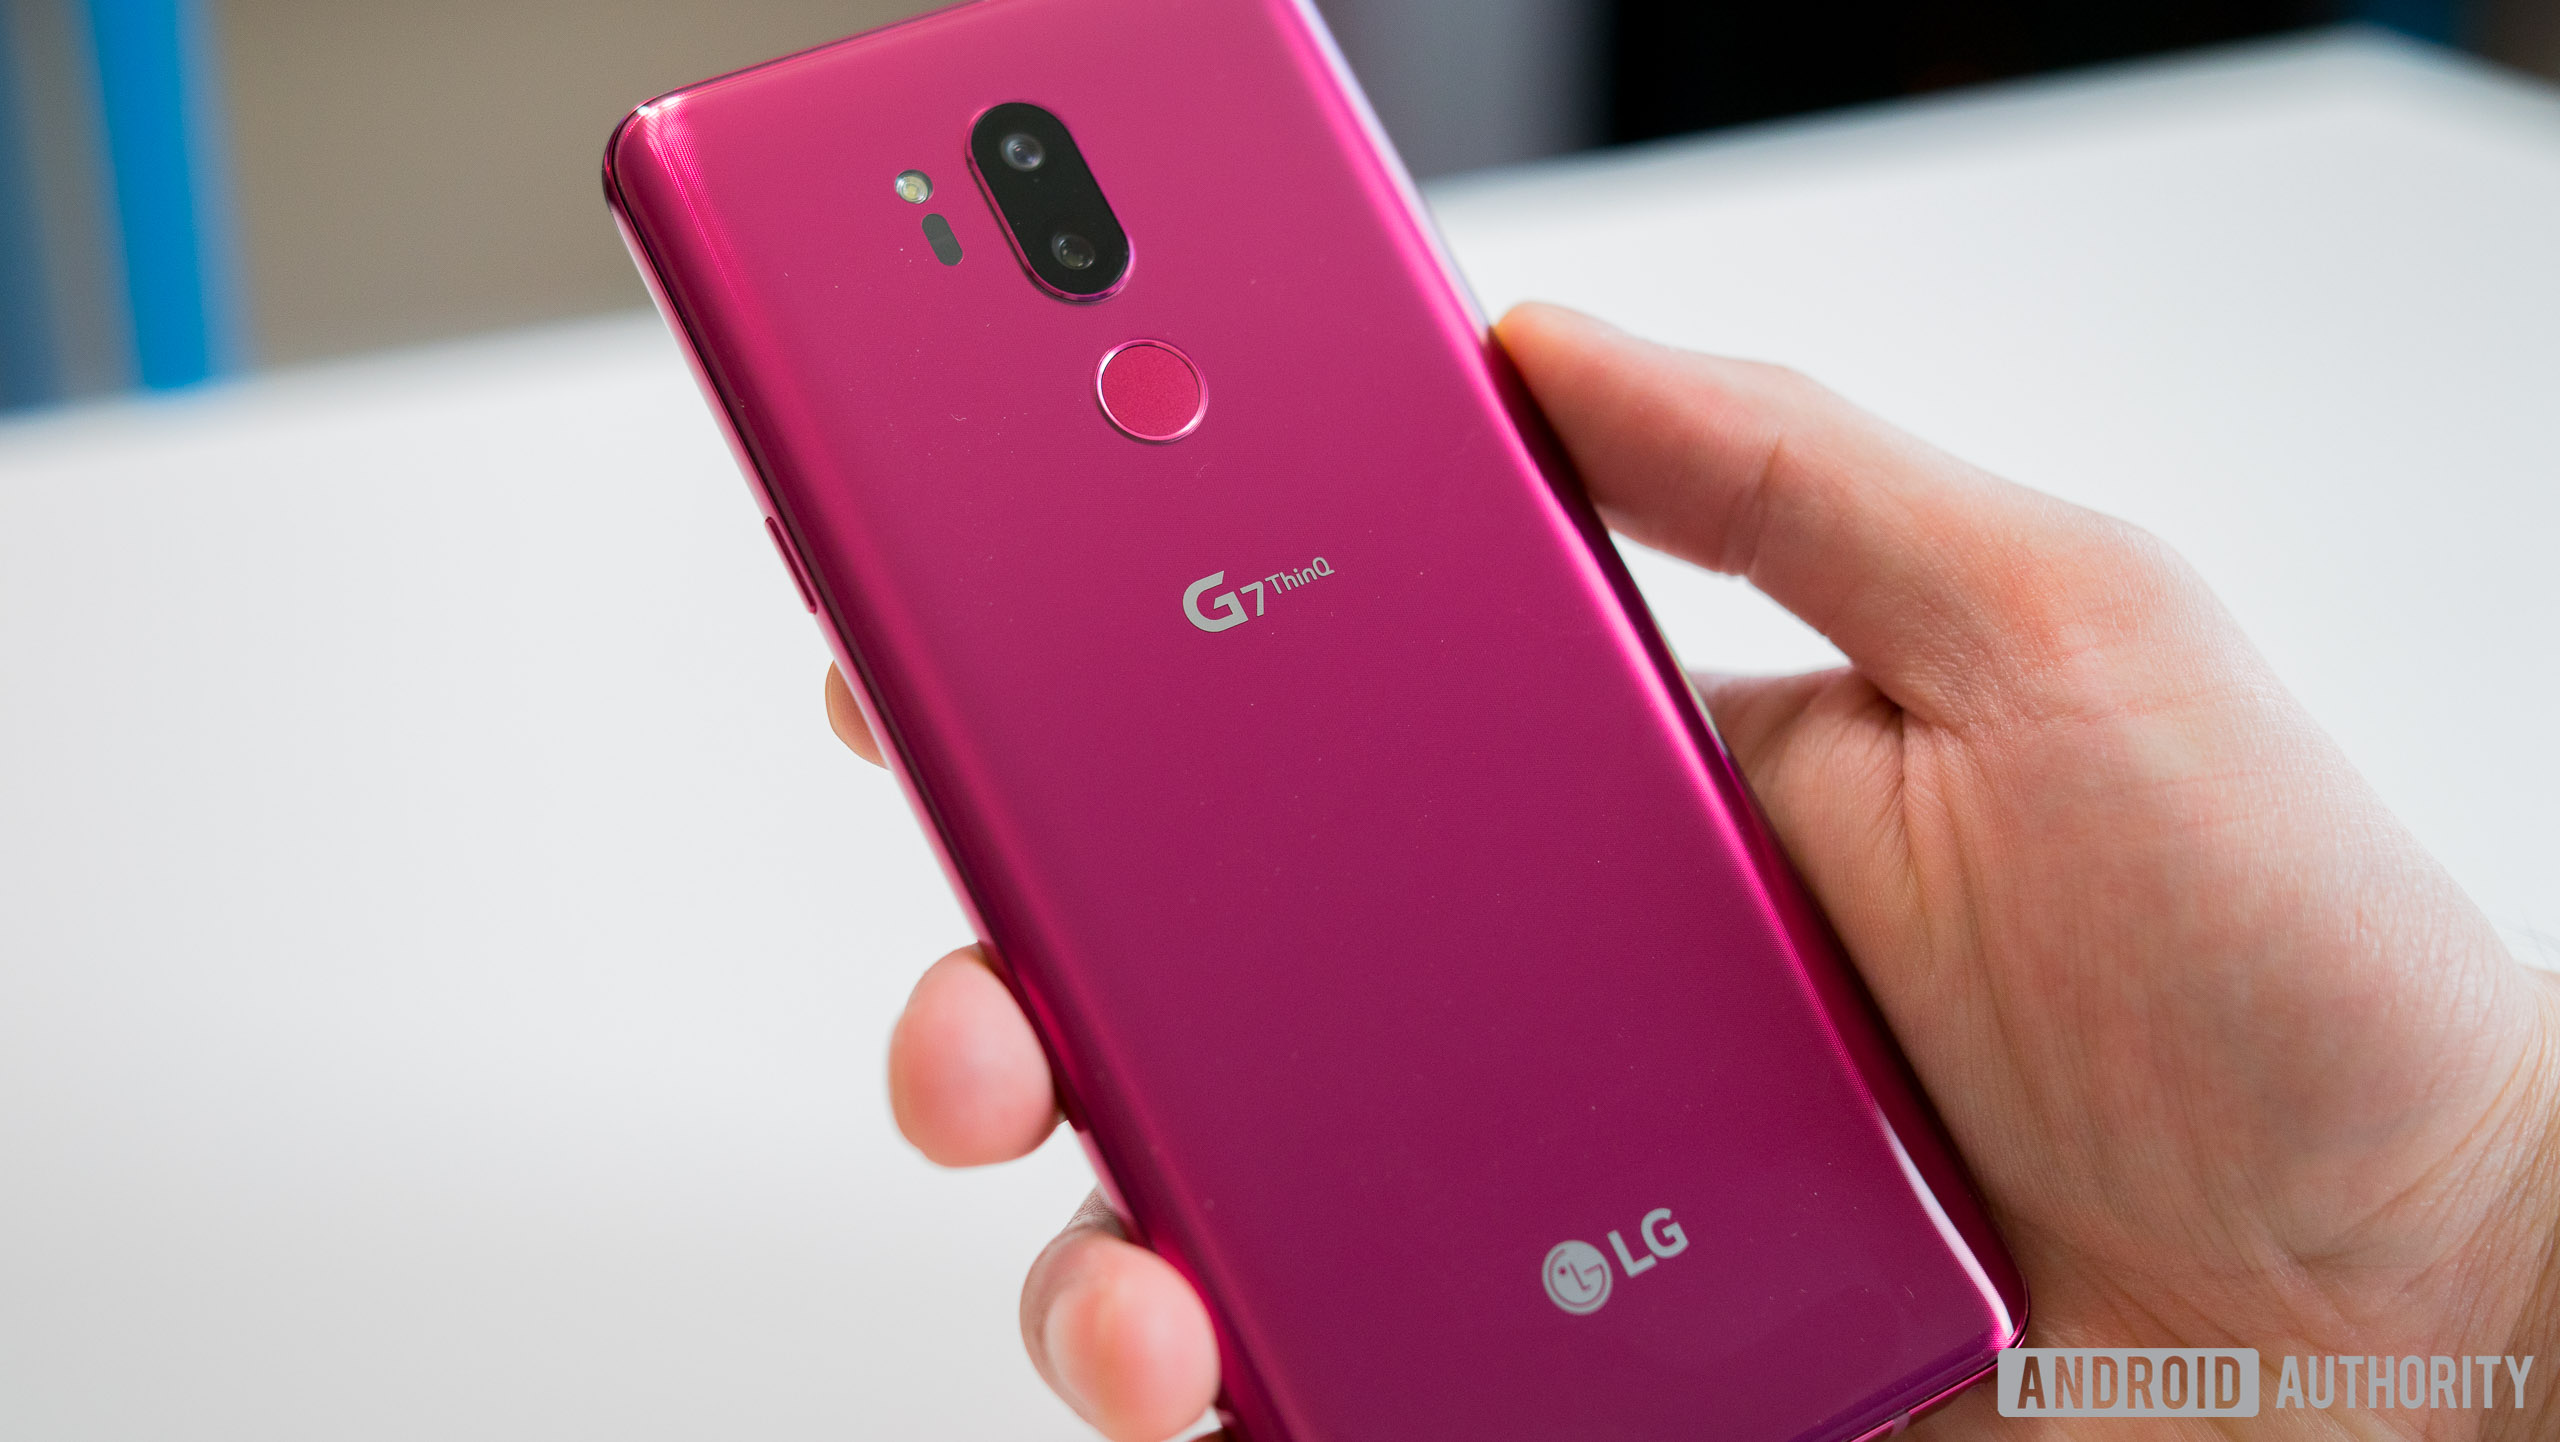 : روشن و با صدای بلند و هوشمند </h4>
<p> به روز رسانی (6/1): G7 ال جی در حال حاضر در دسترس! خرید آن را از خرده فروشان زیر: G7 ال جی در با حداکثر سرعت دویدن دریافت G7 ال جی در ورایزون دریافت G7 ال جی در دریافت T-Mobile LG G7… </p>
</div>
</div>
</div>
<p> اگر می خواهید برای دریافت G7 پروژه ThinQ ال جی فی 749 $ و یا برای 31.21 $ در ماه برای 24 ماه فروش آن است. ThinQ V35 ال جی گران تر است که $899 یا 37.46 $ در ماه برای 24 ماه. گوگل ارائه شده است $100 پروژه فی اعتبار صدور صورتحساب هنگامی که شما خرید یا تلفن اما این پیشنهاد زمان محدود است که در ژوئیه 7 به پایان خواهد رسید. به منظور دریافت اعتبار تلفن باید در پروژه فی در ظرف 30 روز از آن حمل و نقل فعال و فعال 30 روز متوالی ظرف 60 روز حمل و نقل آن باقی می ماند. در زمانی که این گوشی خواهد شد شروع به حمل و نقل را به مشتریان قبل از سفارش روشن نیست. </p>
<p> فی پروژه در حال حاضر مبادرت به فروش شش تلفن های مستقیم در خود سایت: گوگل خود پیکسل 2 و پیکسل 2 XL, G6 موتور نسخه آندروید یک موتور X 4 و در حال حاضر ThinQ G7 ال جی و V35 ThinQ. </p>
</div>
<p><a href=